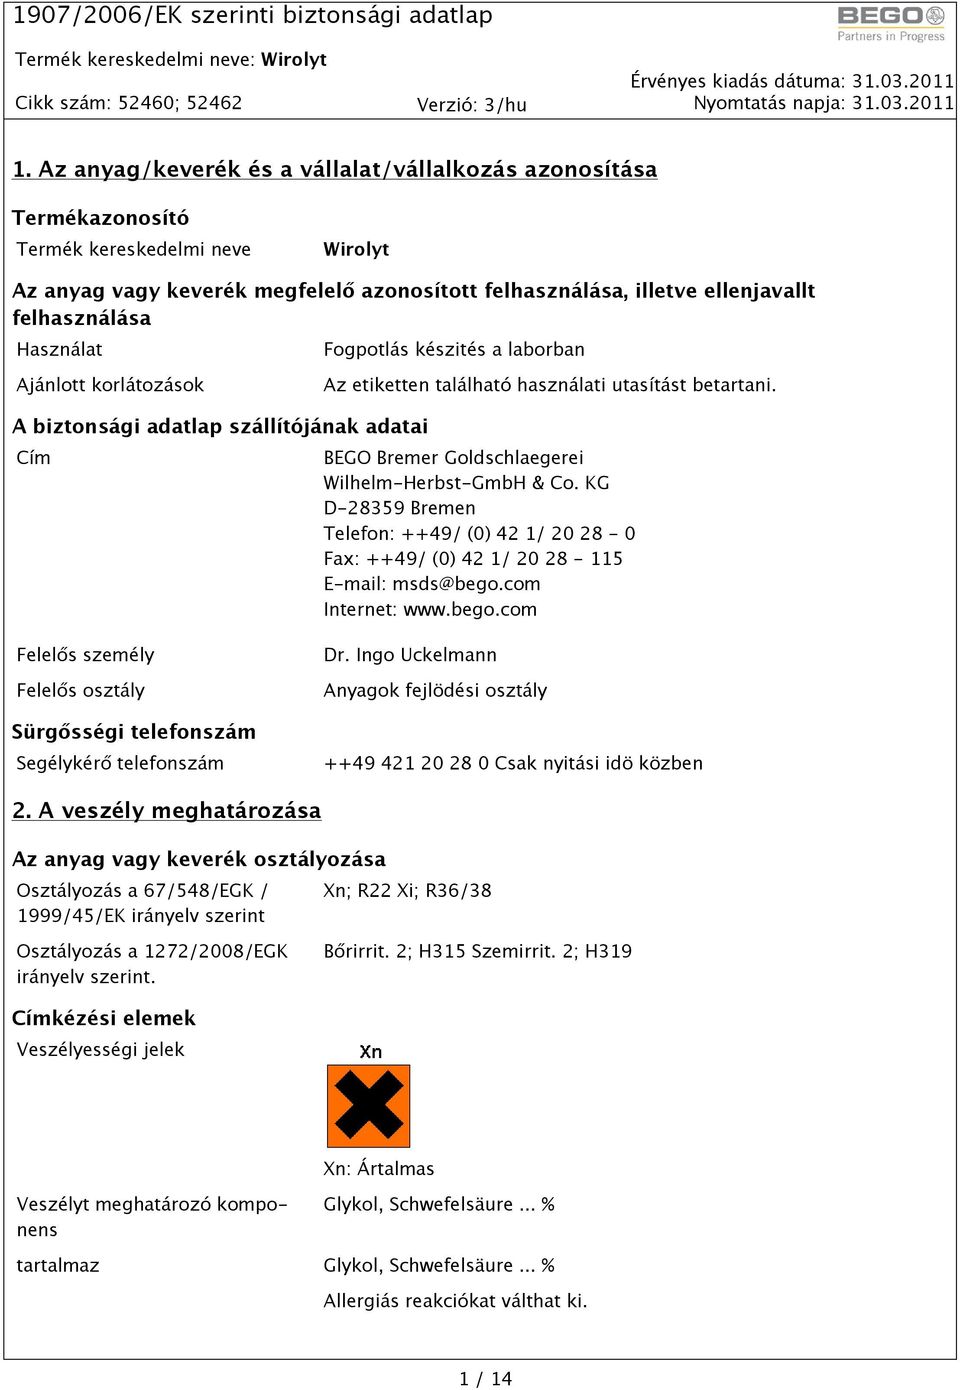 A biztonsági adatlap szállítójának adatai Cím BEGO Bremer Goldschlaegerei Wilhelm-Herbst-GmbH & Co. KG D-28359 Bremen Telefon: ++49/ (0) 42 1/ 20 28-0 Fax: ++49/ (0) 42 1/ 20 28-115 E-mail: msds@bego.